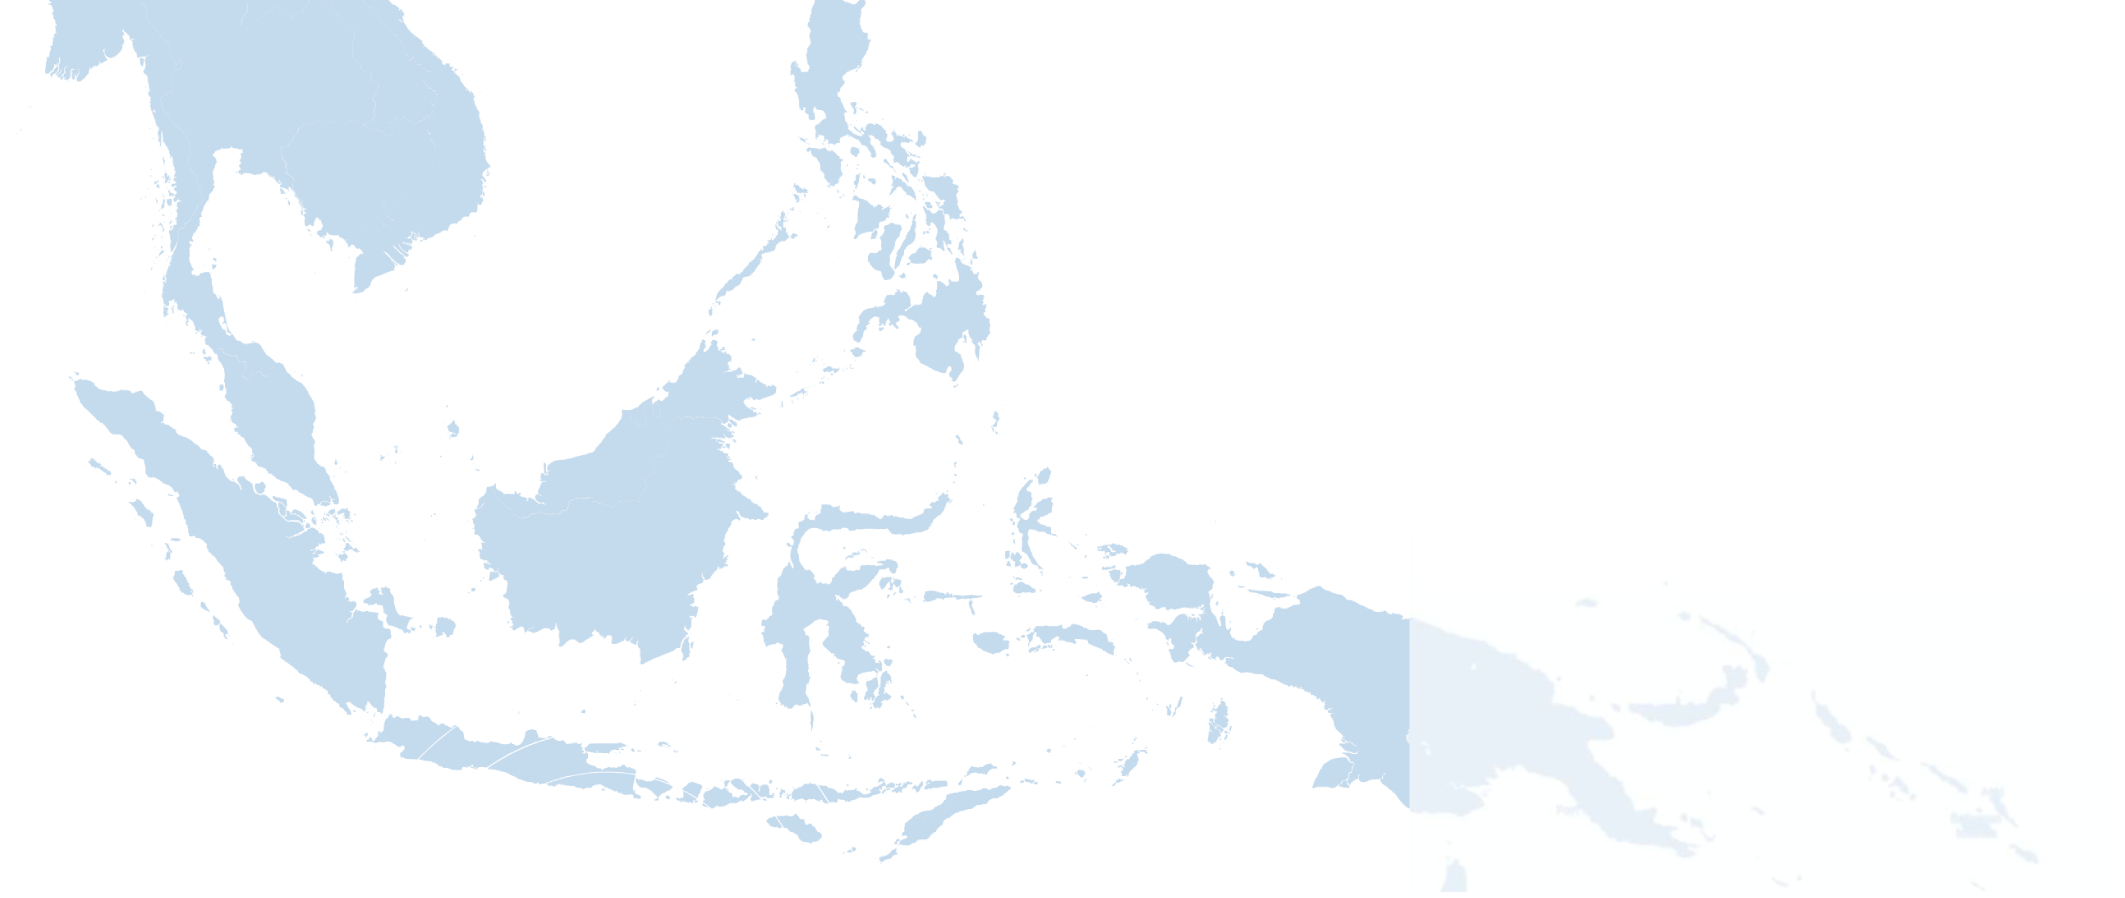 ASEAN maps image